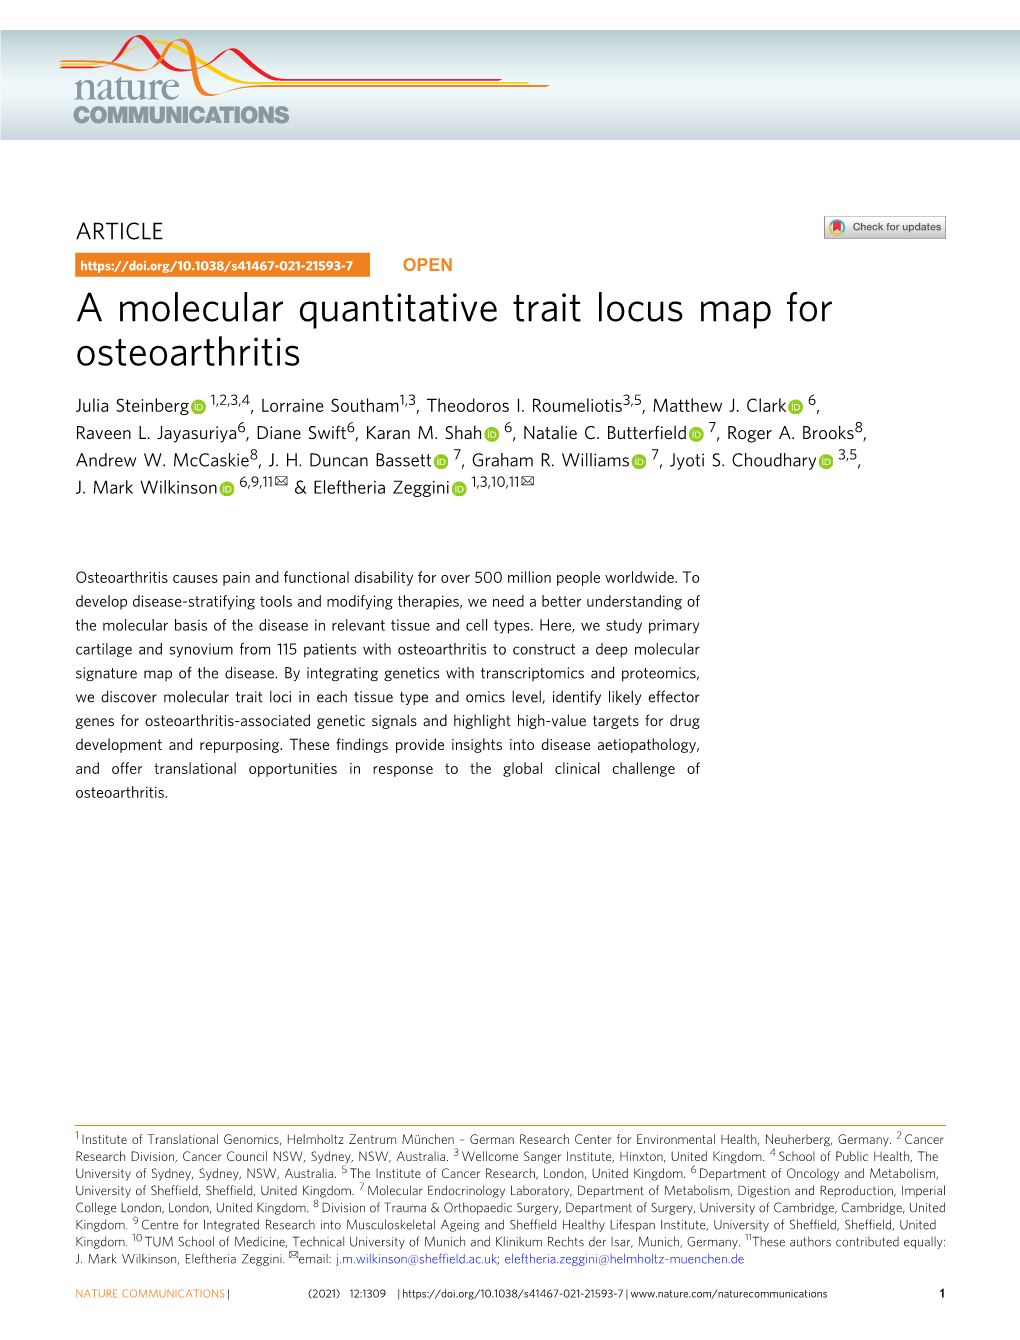 A Molecular Quantitative Trait Locus Map for Osteoarthritis